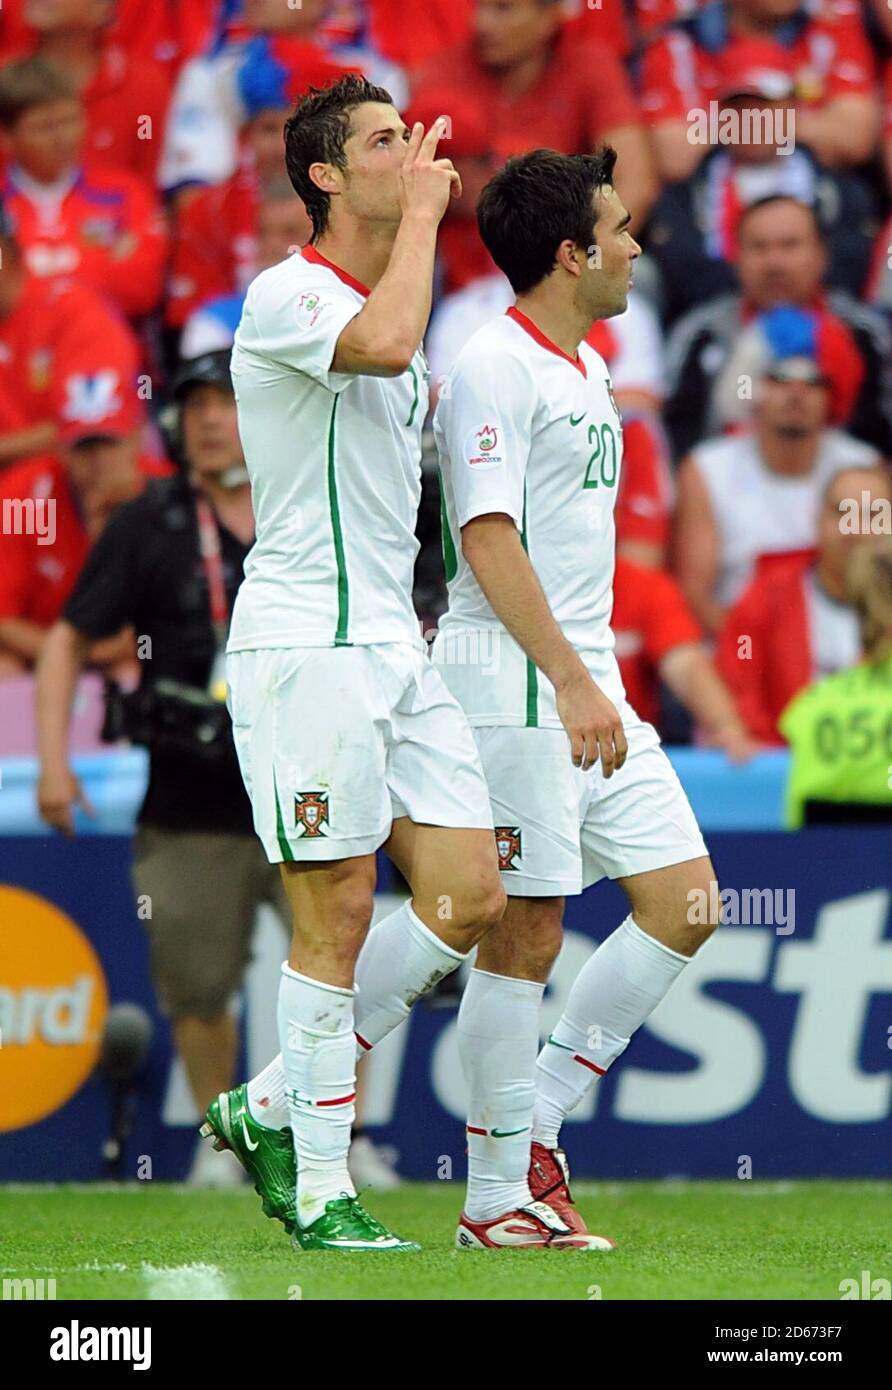 Il portoghese Cristiano Ronaldo (a sinistra) festeggia con il compagno di squadra Anderson Deco dopo aver segnato il terzo obiettivo del gioco. Foto Stock